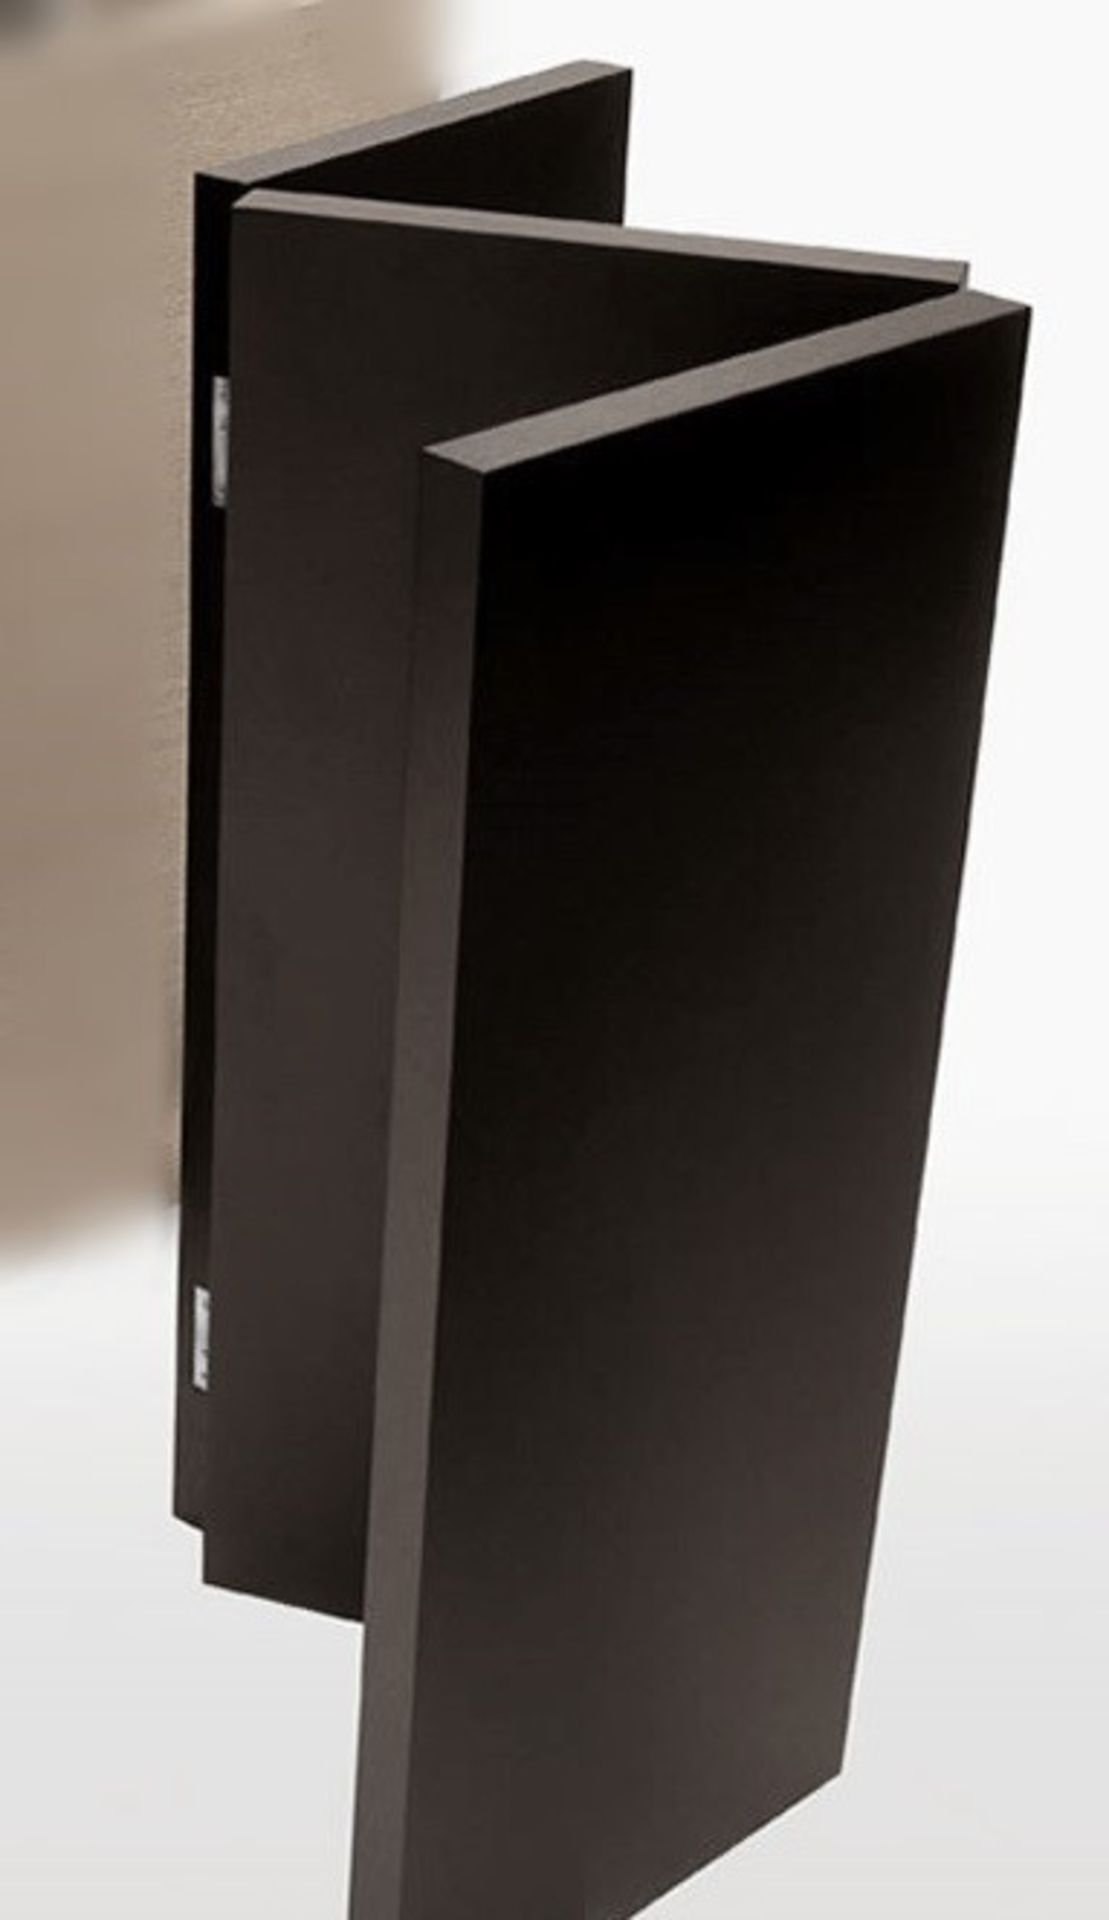 1 x MAXALTO "Arke" Screen (Ss12) - Brushed Black Oak - Ref: 2847718 - width 150cm | height 120cm -